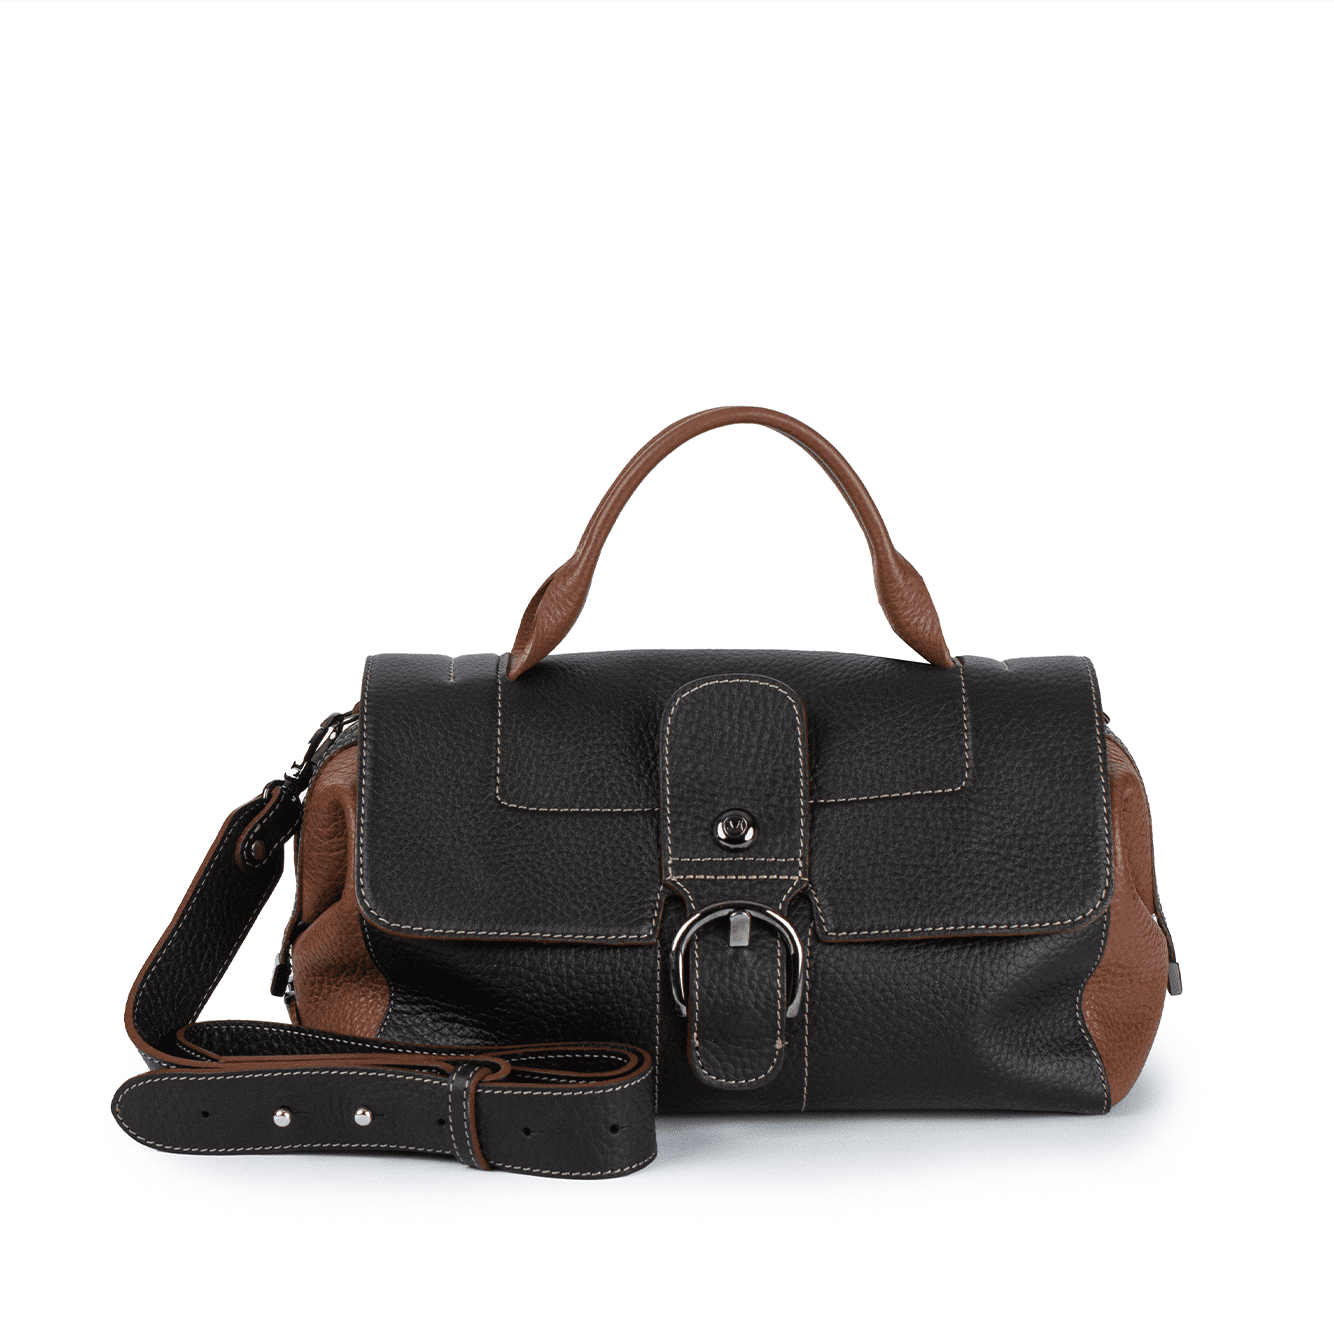 2626 Ladies Baguette Bag in Leather